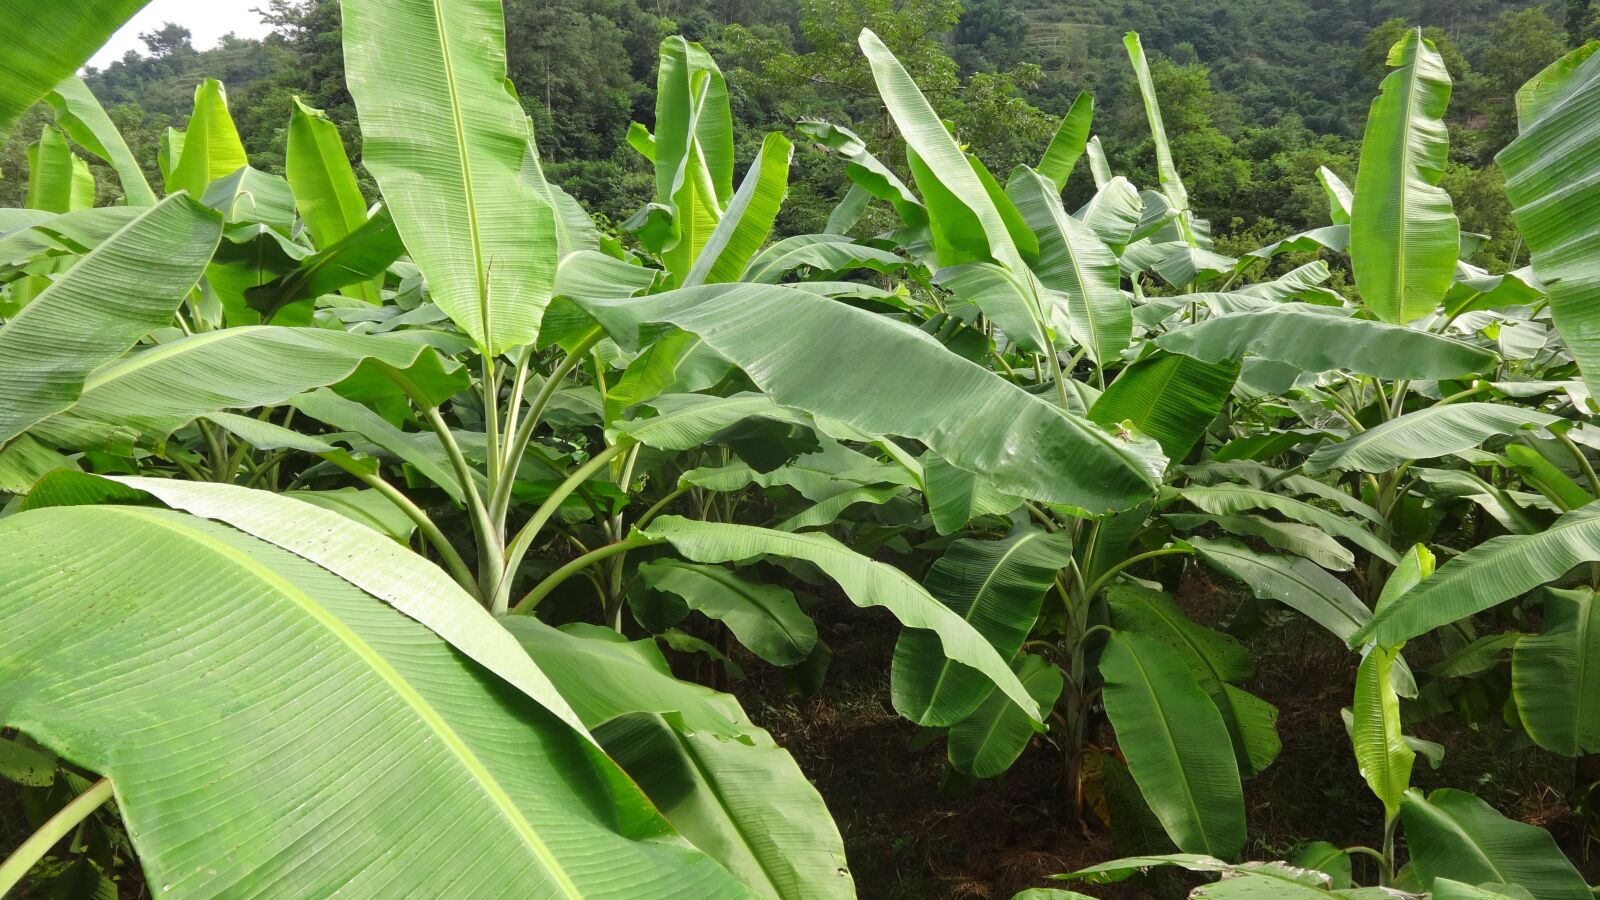 Sony Cyber-shot DSC-WX80 sample photo. Banana, banana garden, nepali photography